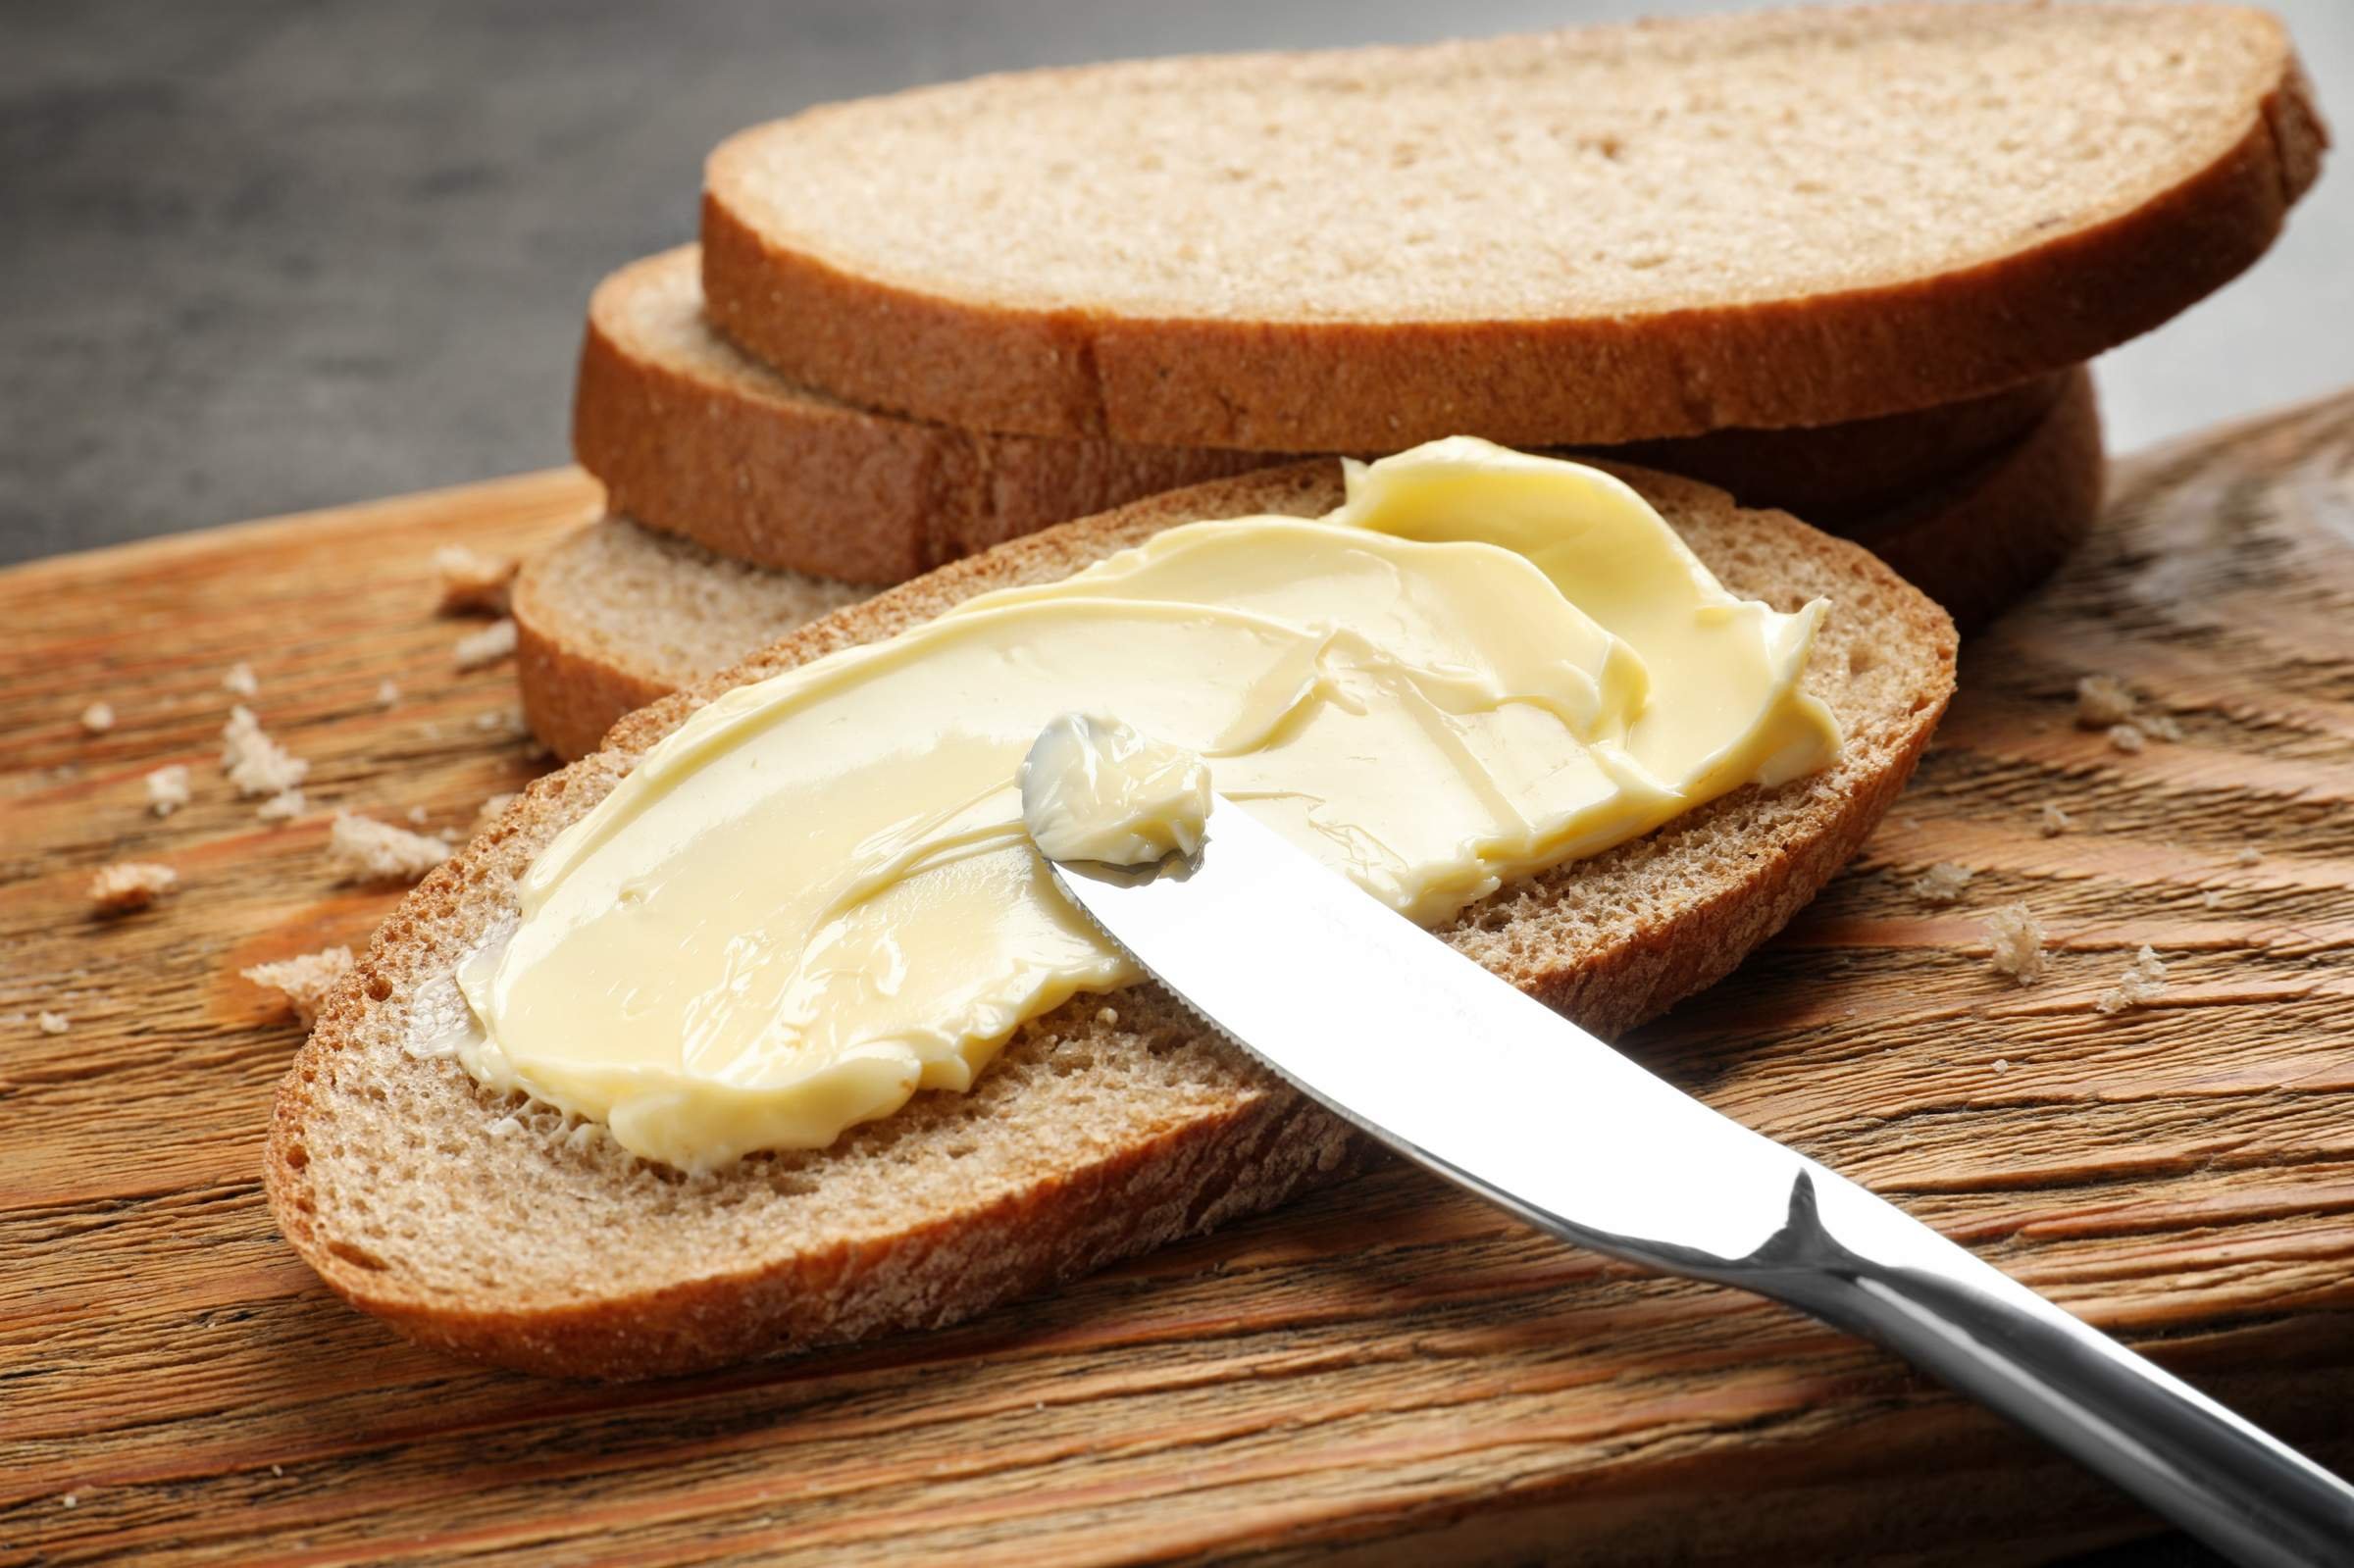 Хлеб с маслом грамм. Сливочное масло на хлебе. Бутерброд со сливочным маслом. Сливочное масло на хлебебе. Хлеб с маслом.